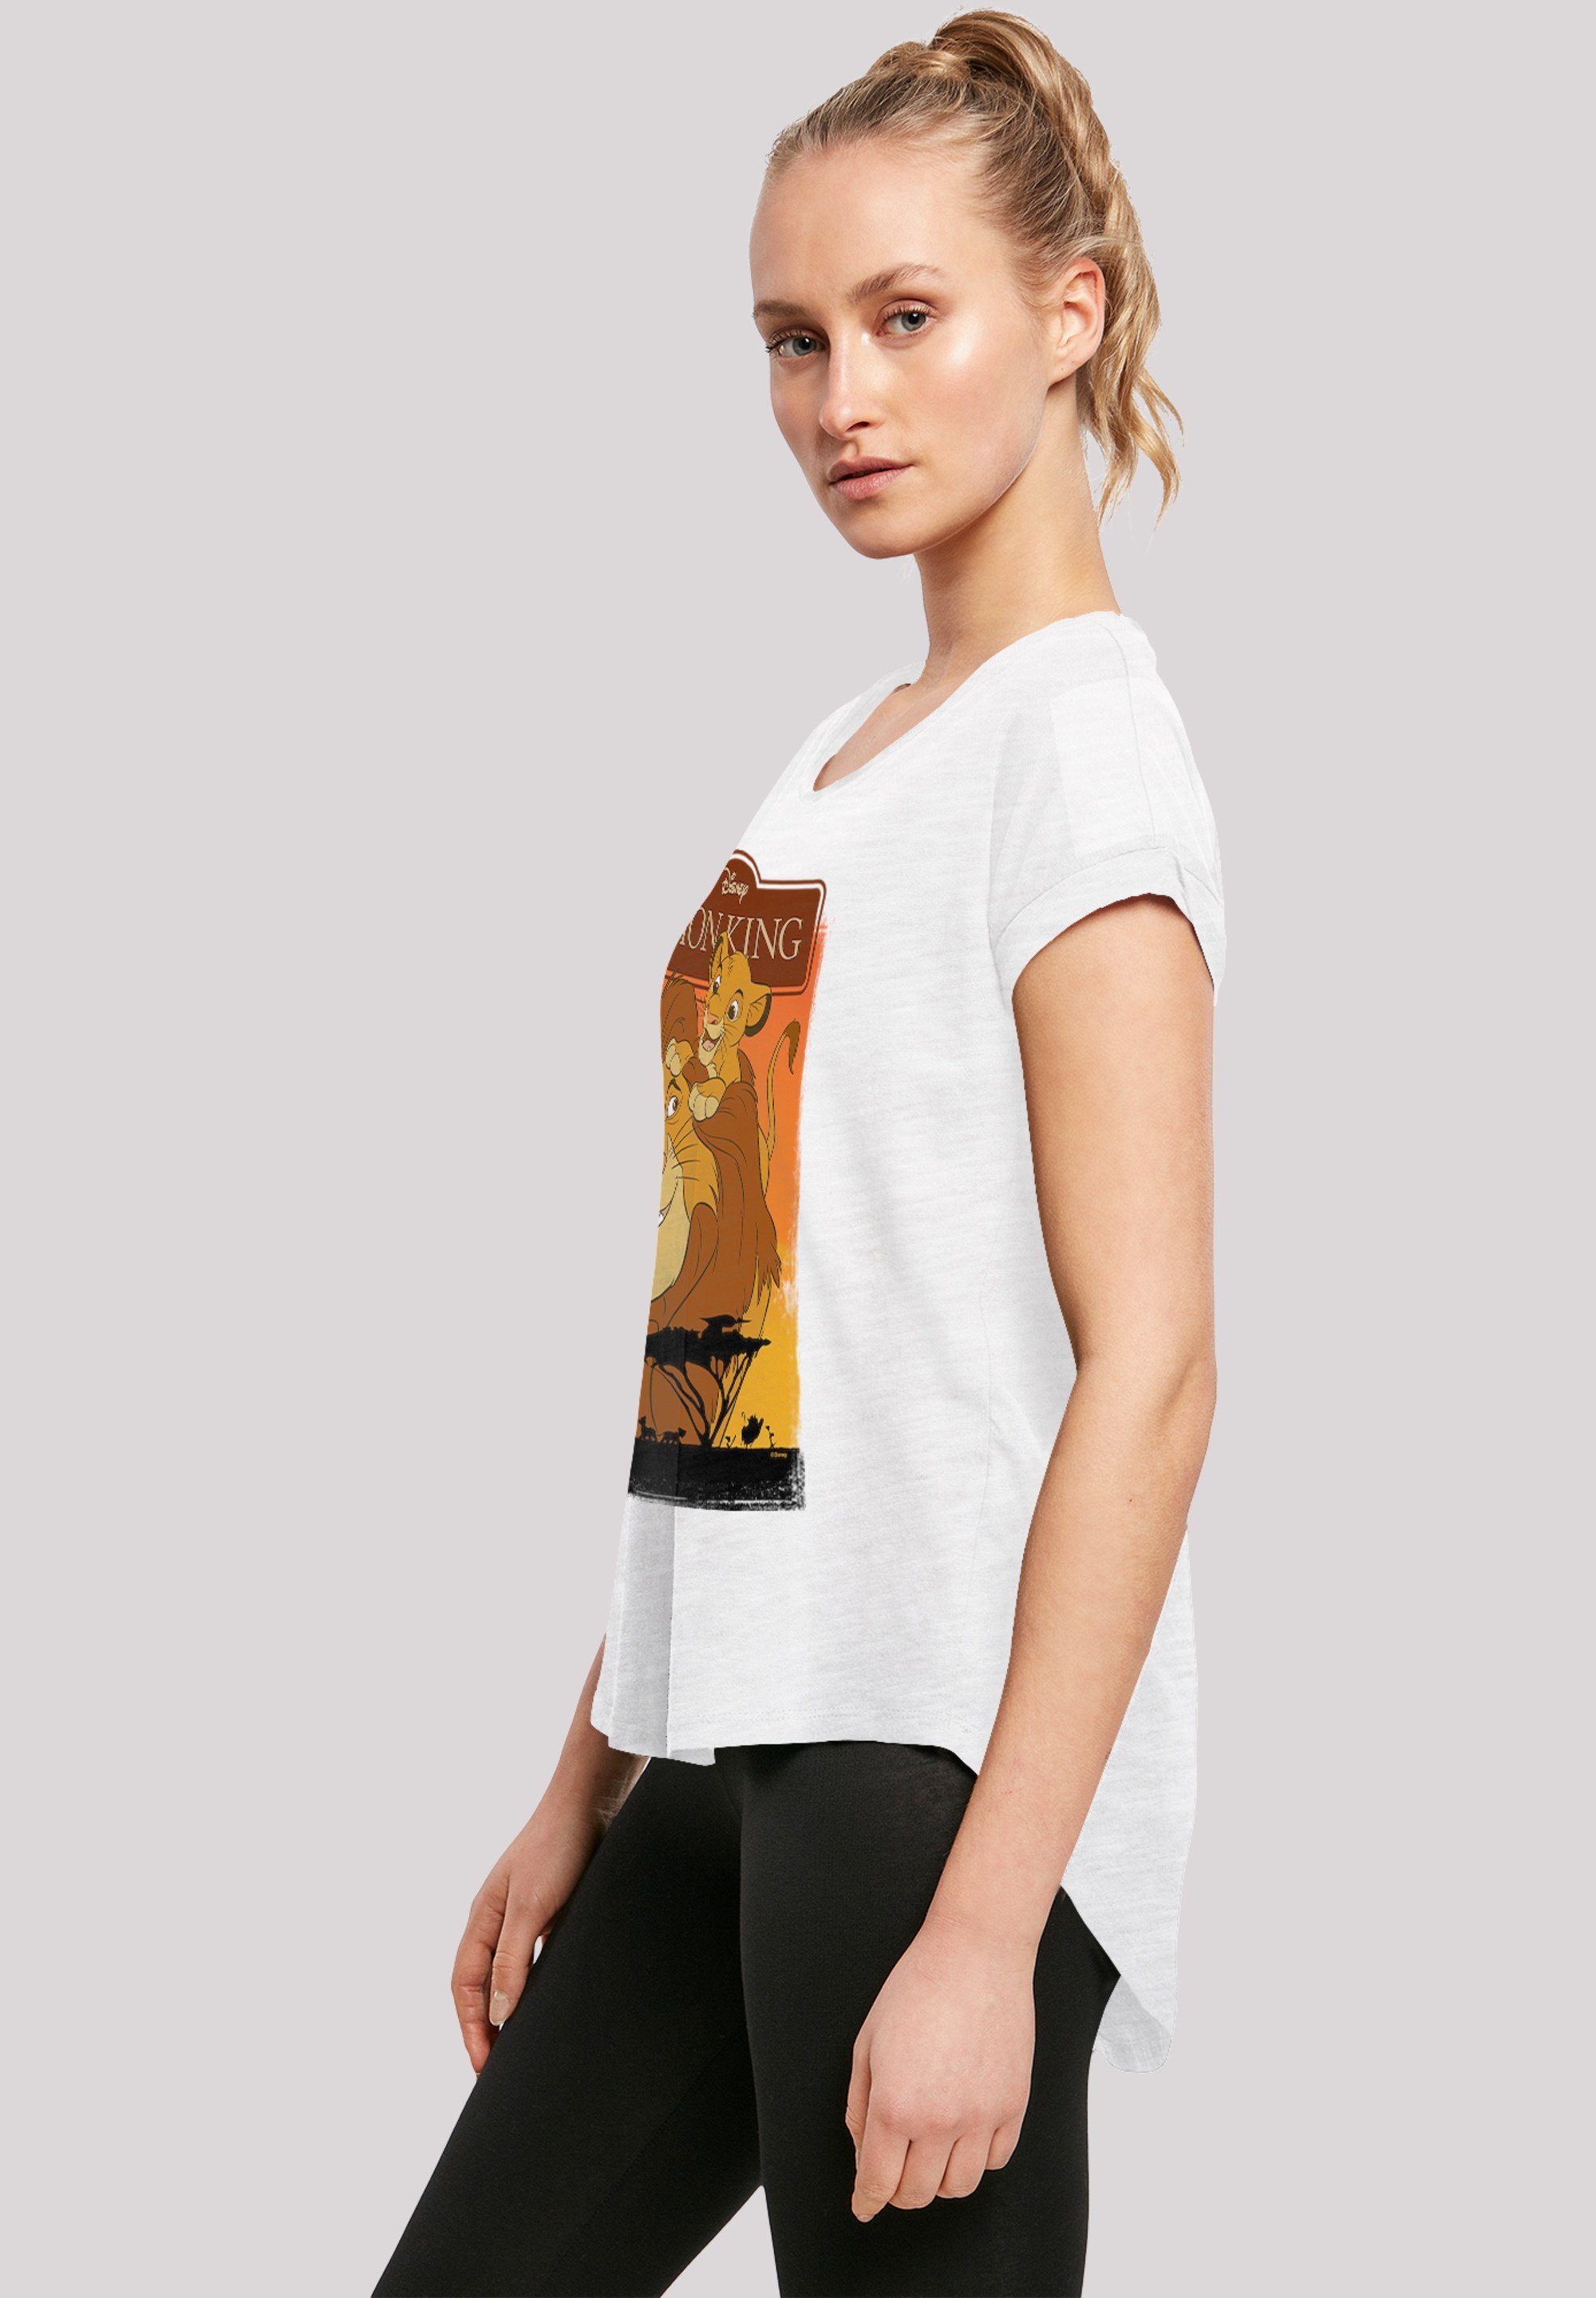 Damen Shirts F4NT4STIC T-Shirt Long Cut T-Shirt Disney Der König der Löwen Simba und Mufasa